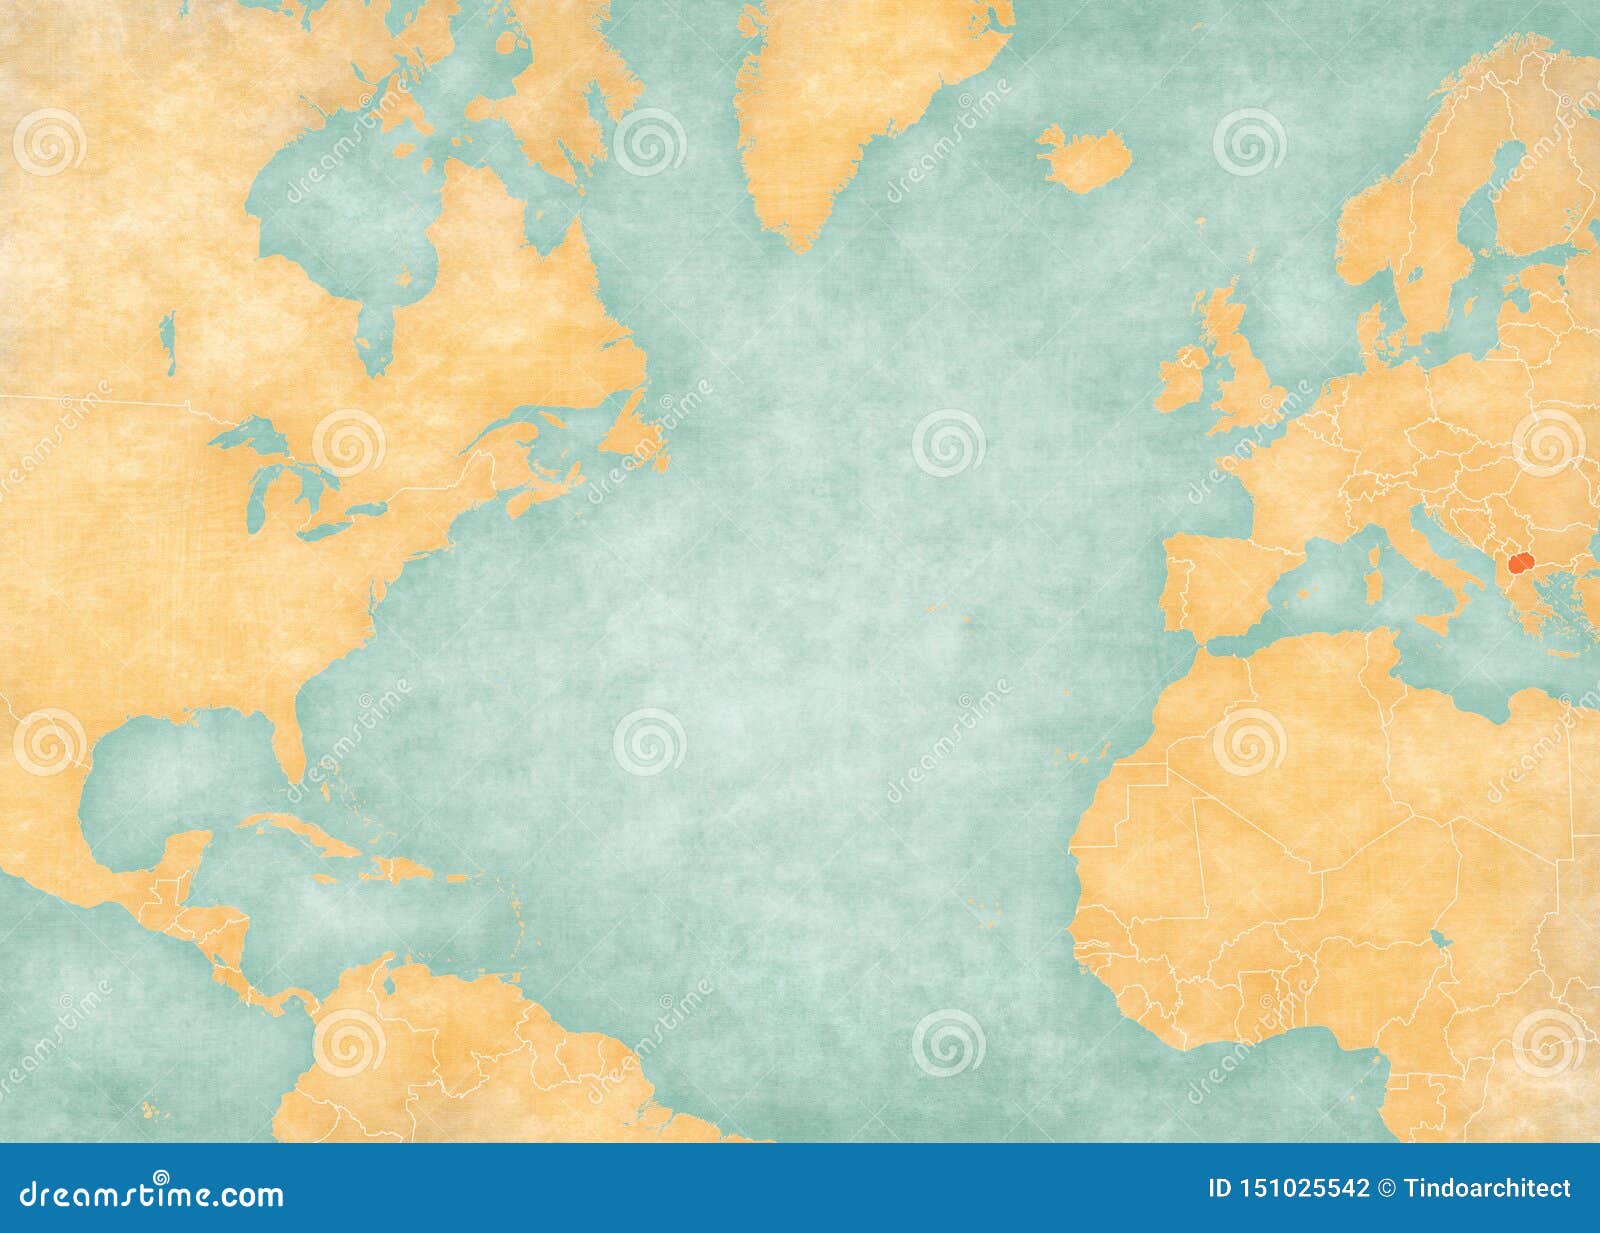 map of north atlantic ocean - north macedonia